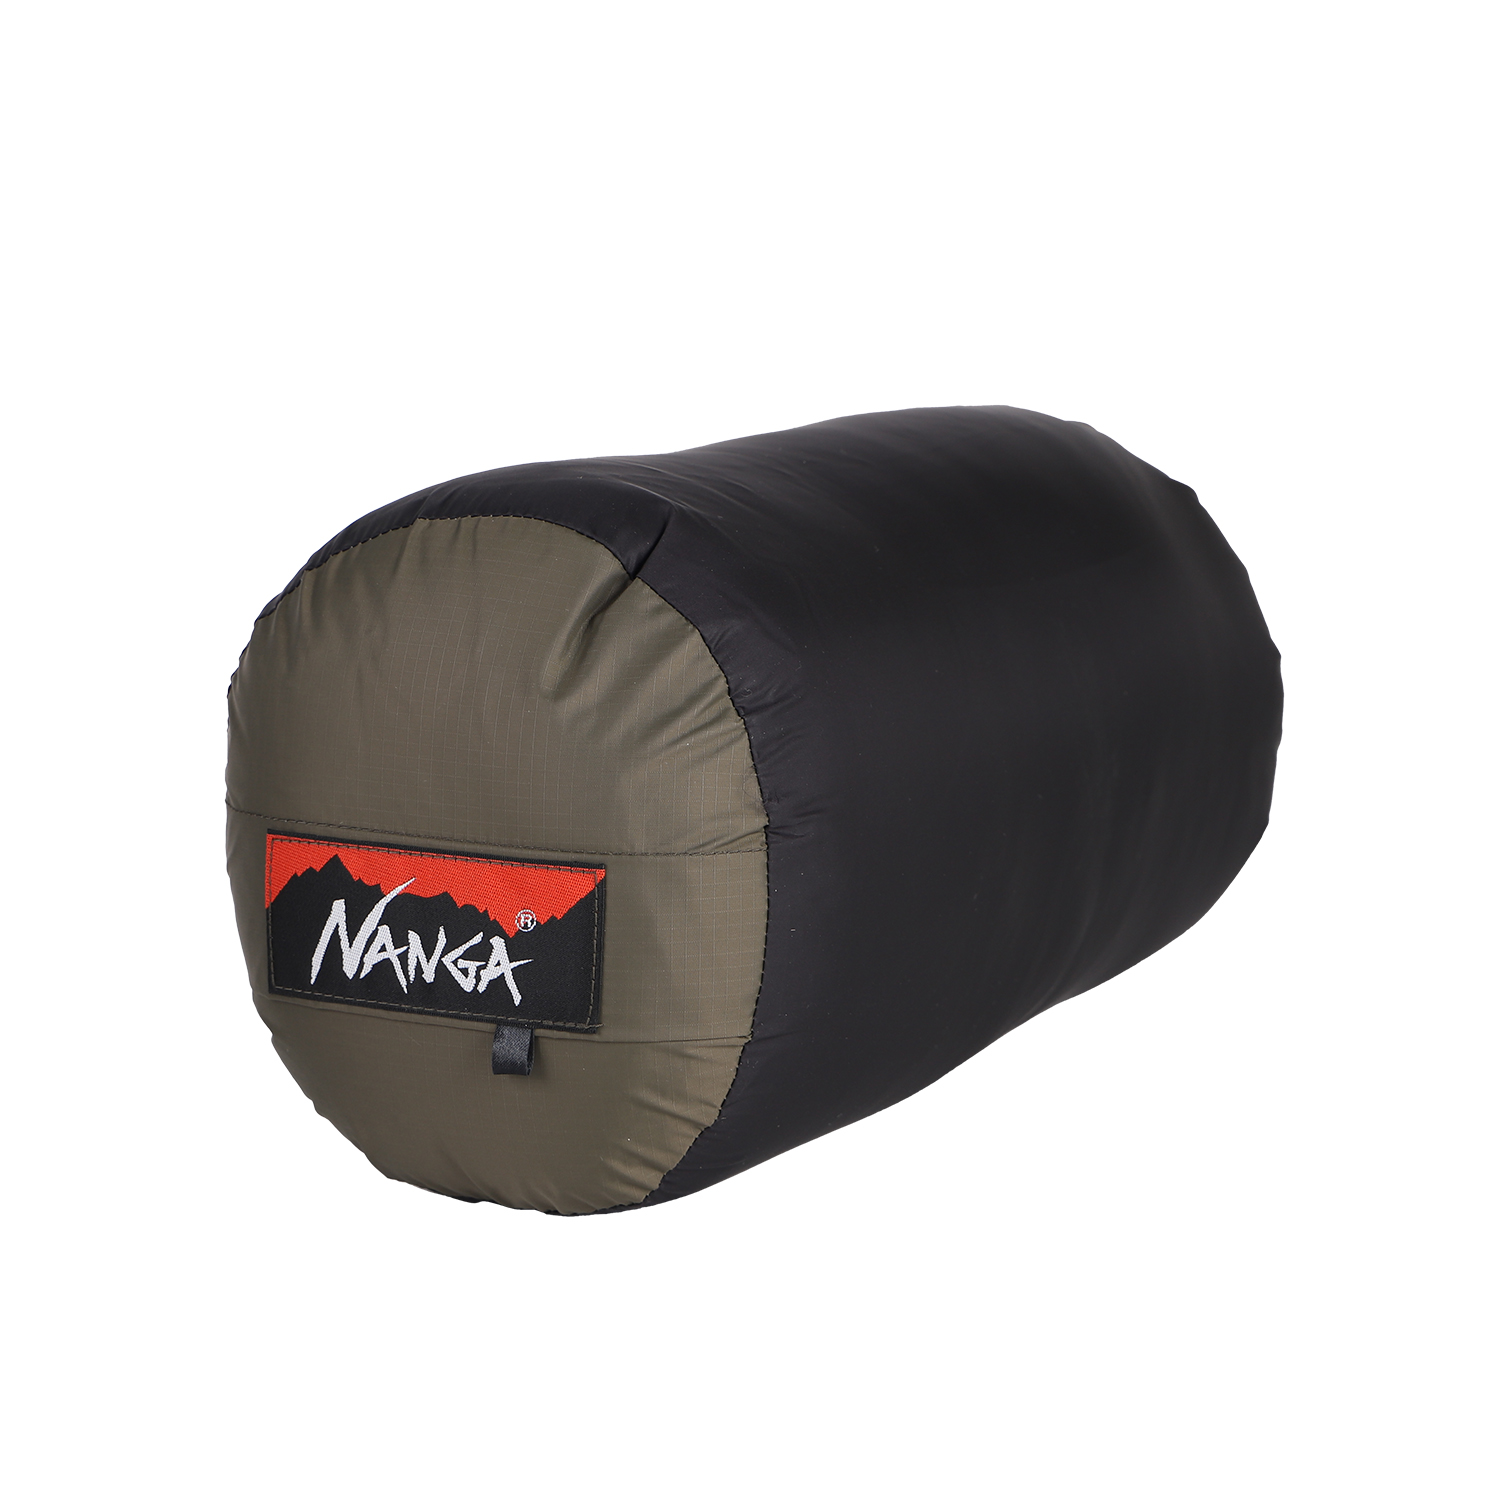 ナンガ NANGA シュラフ 寝袋 オーロラ ダウン マミー型 AURORA